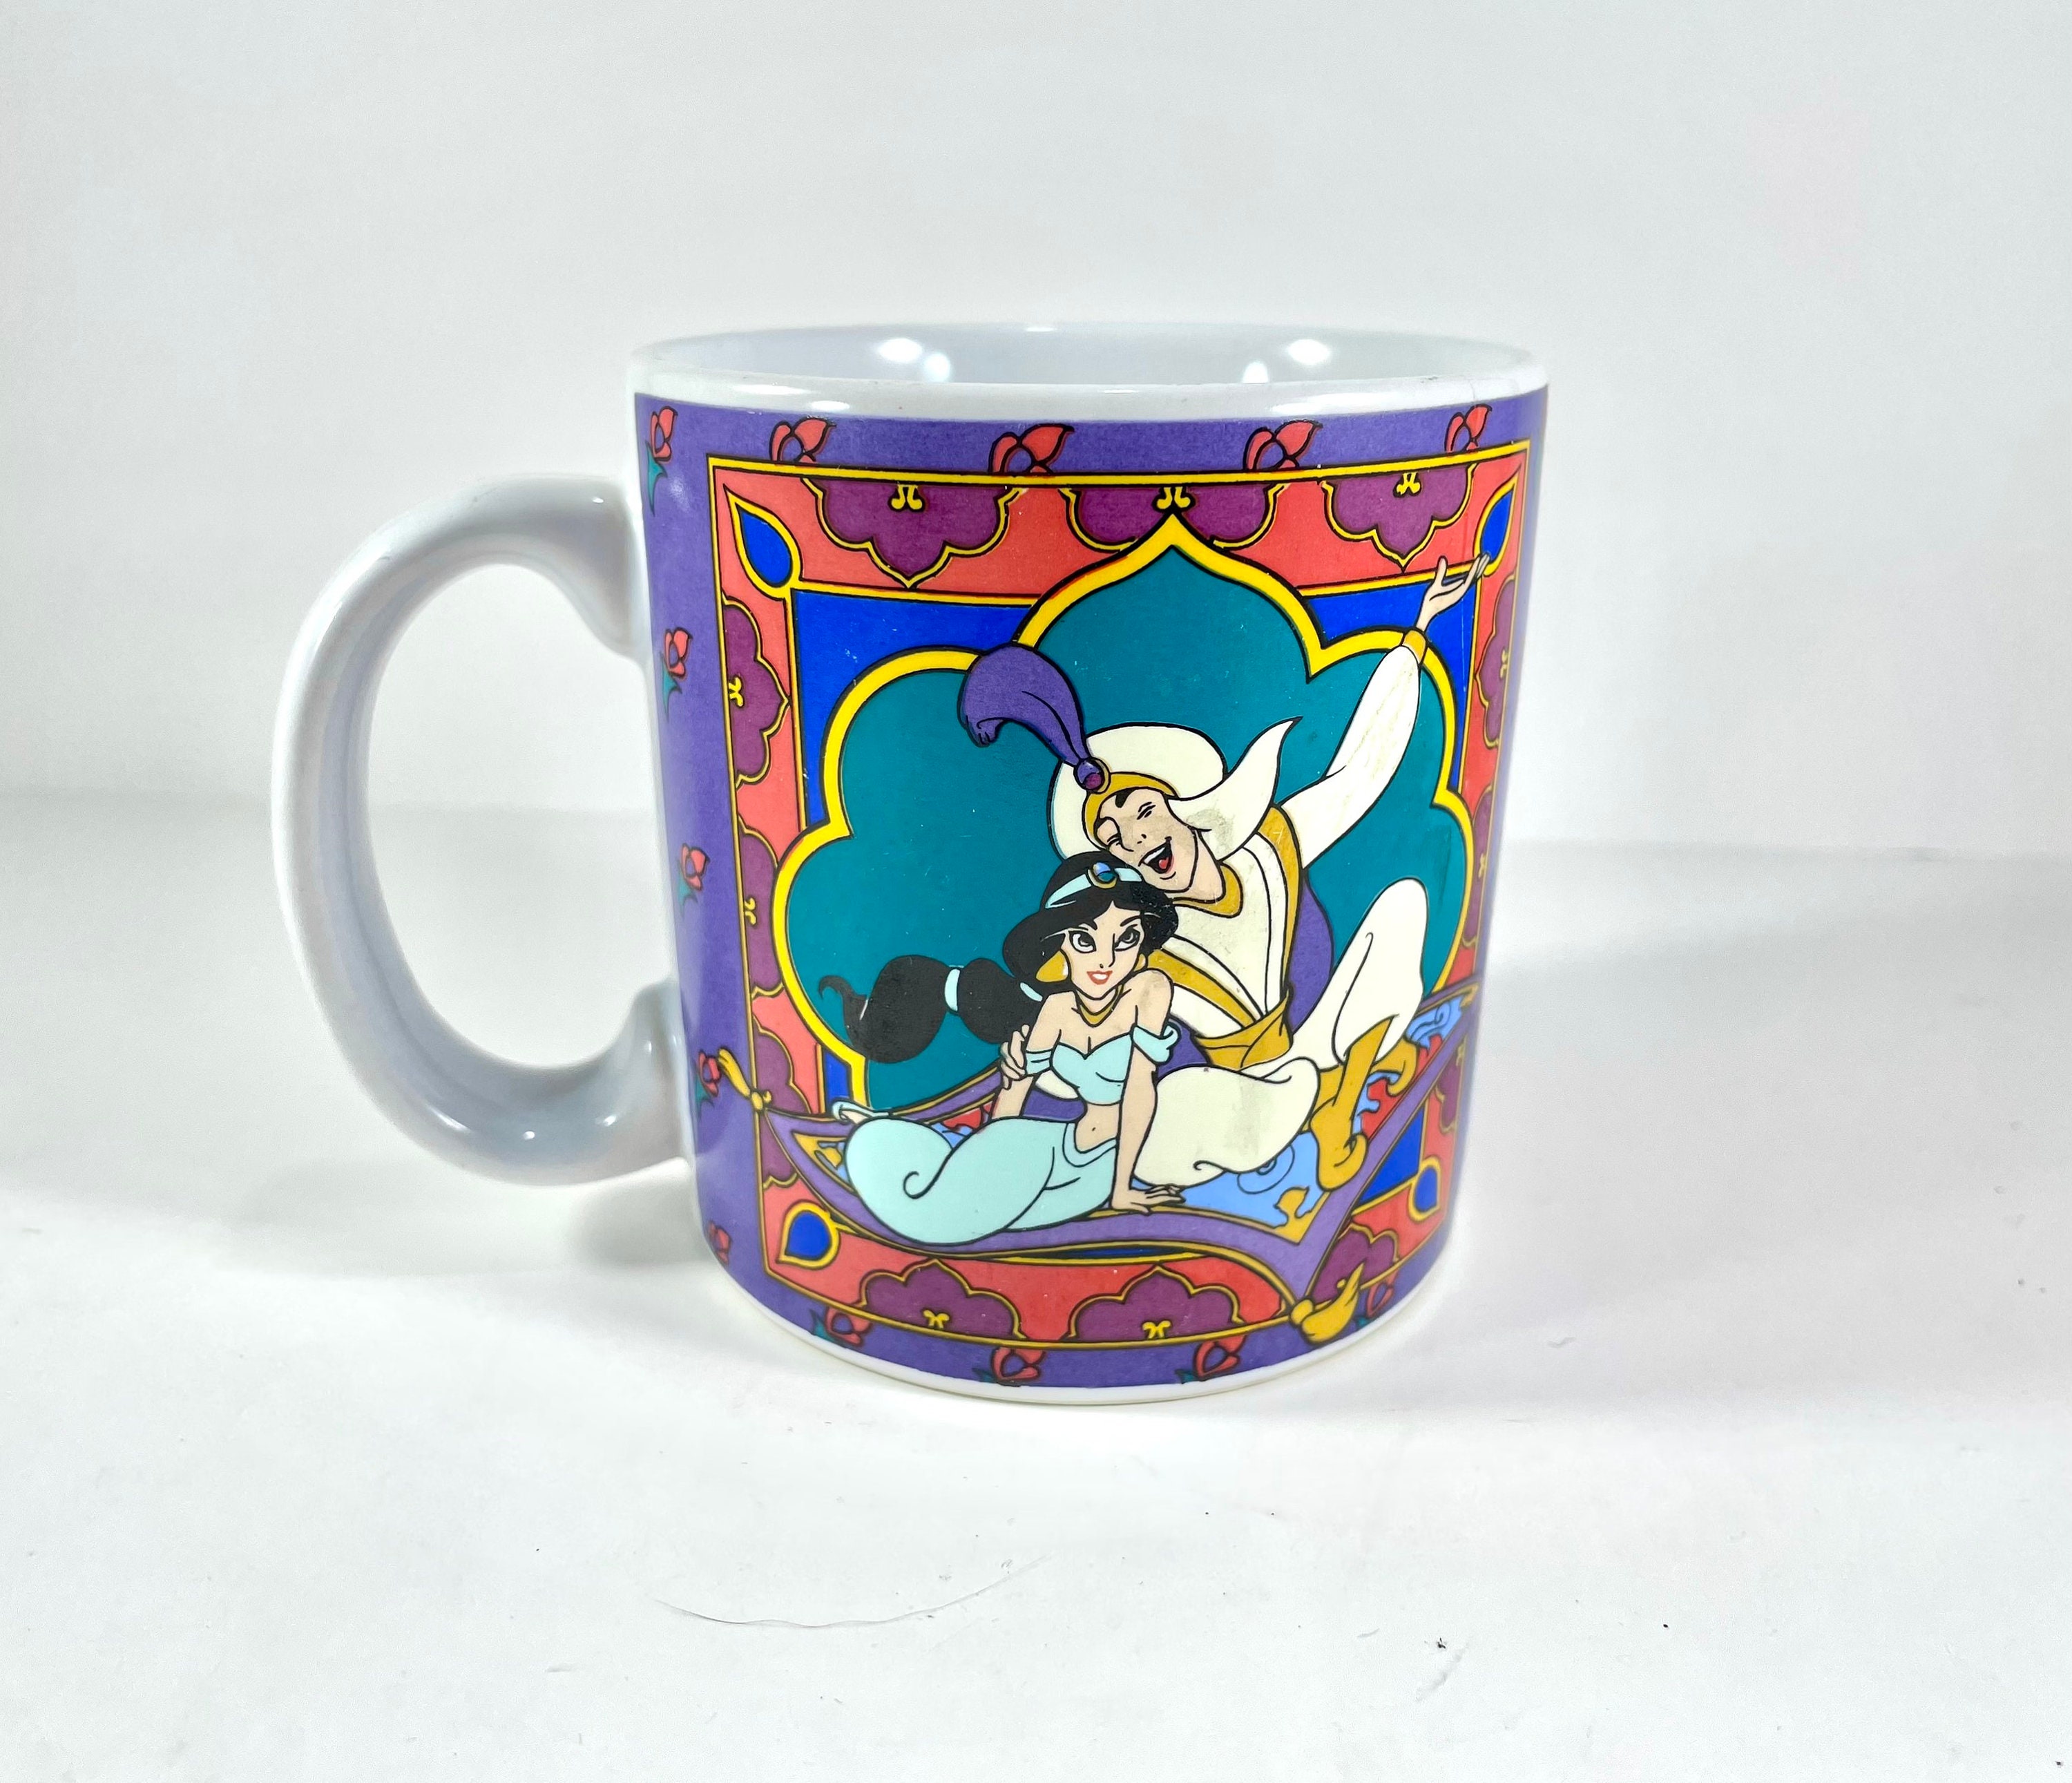 Disney Genie Tall Mug - Aladdin